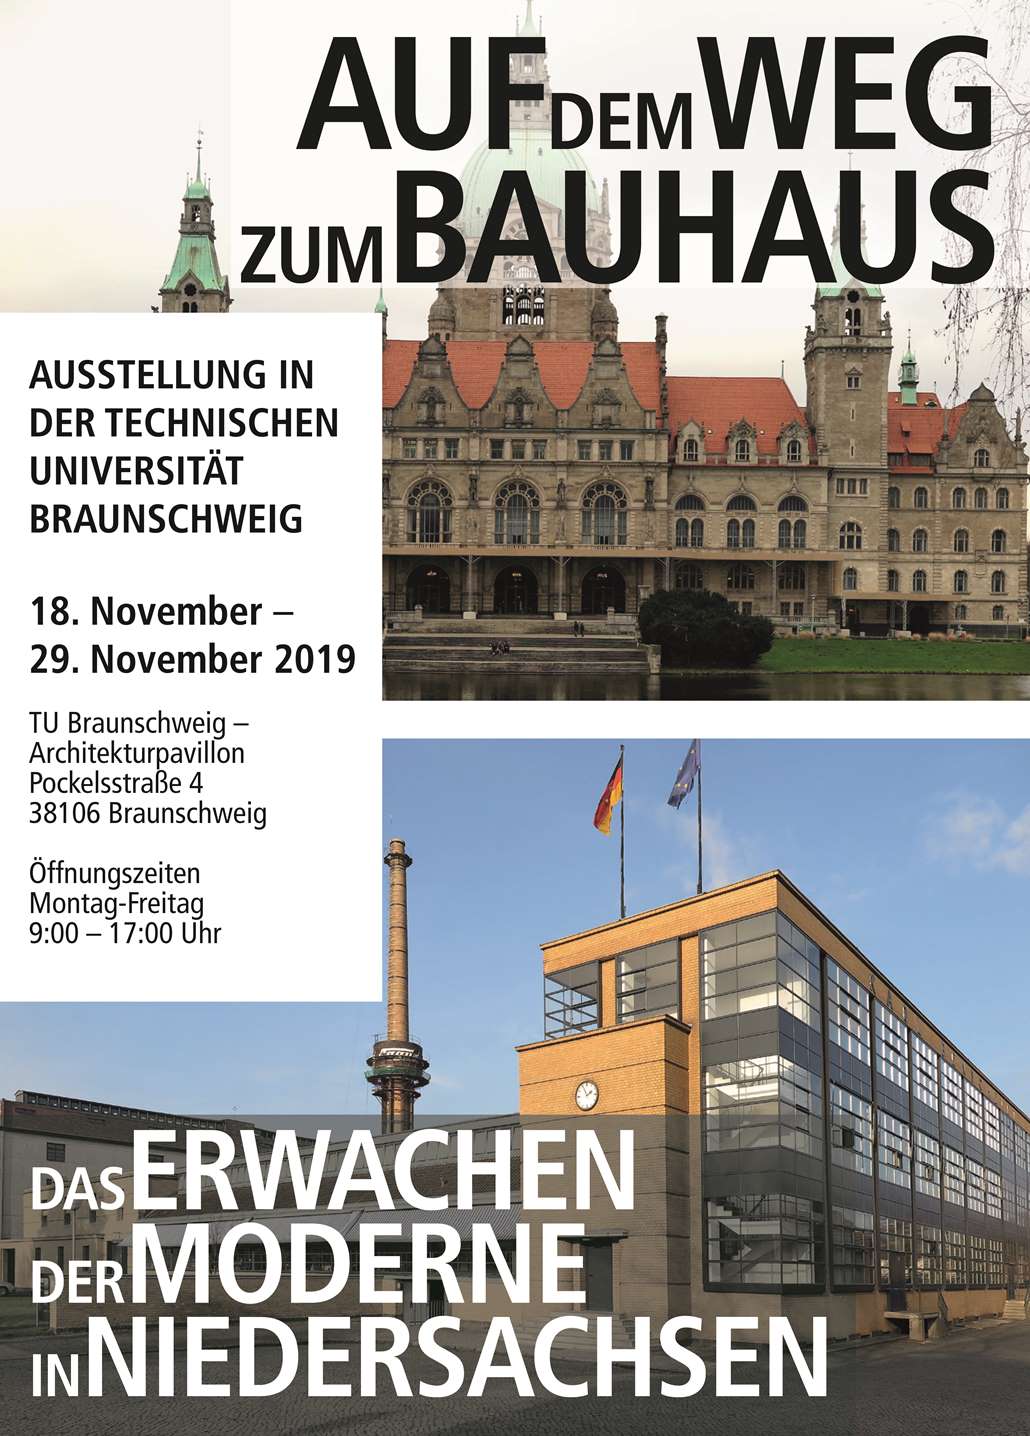 Das Fagus-Werk in Alfeld und das Neue Rathaus in Hannover, Ausstellung in der Technischen Universität Braunschweig